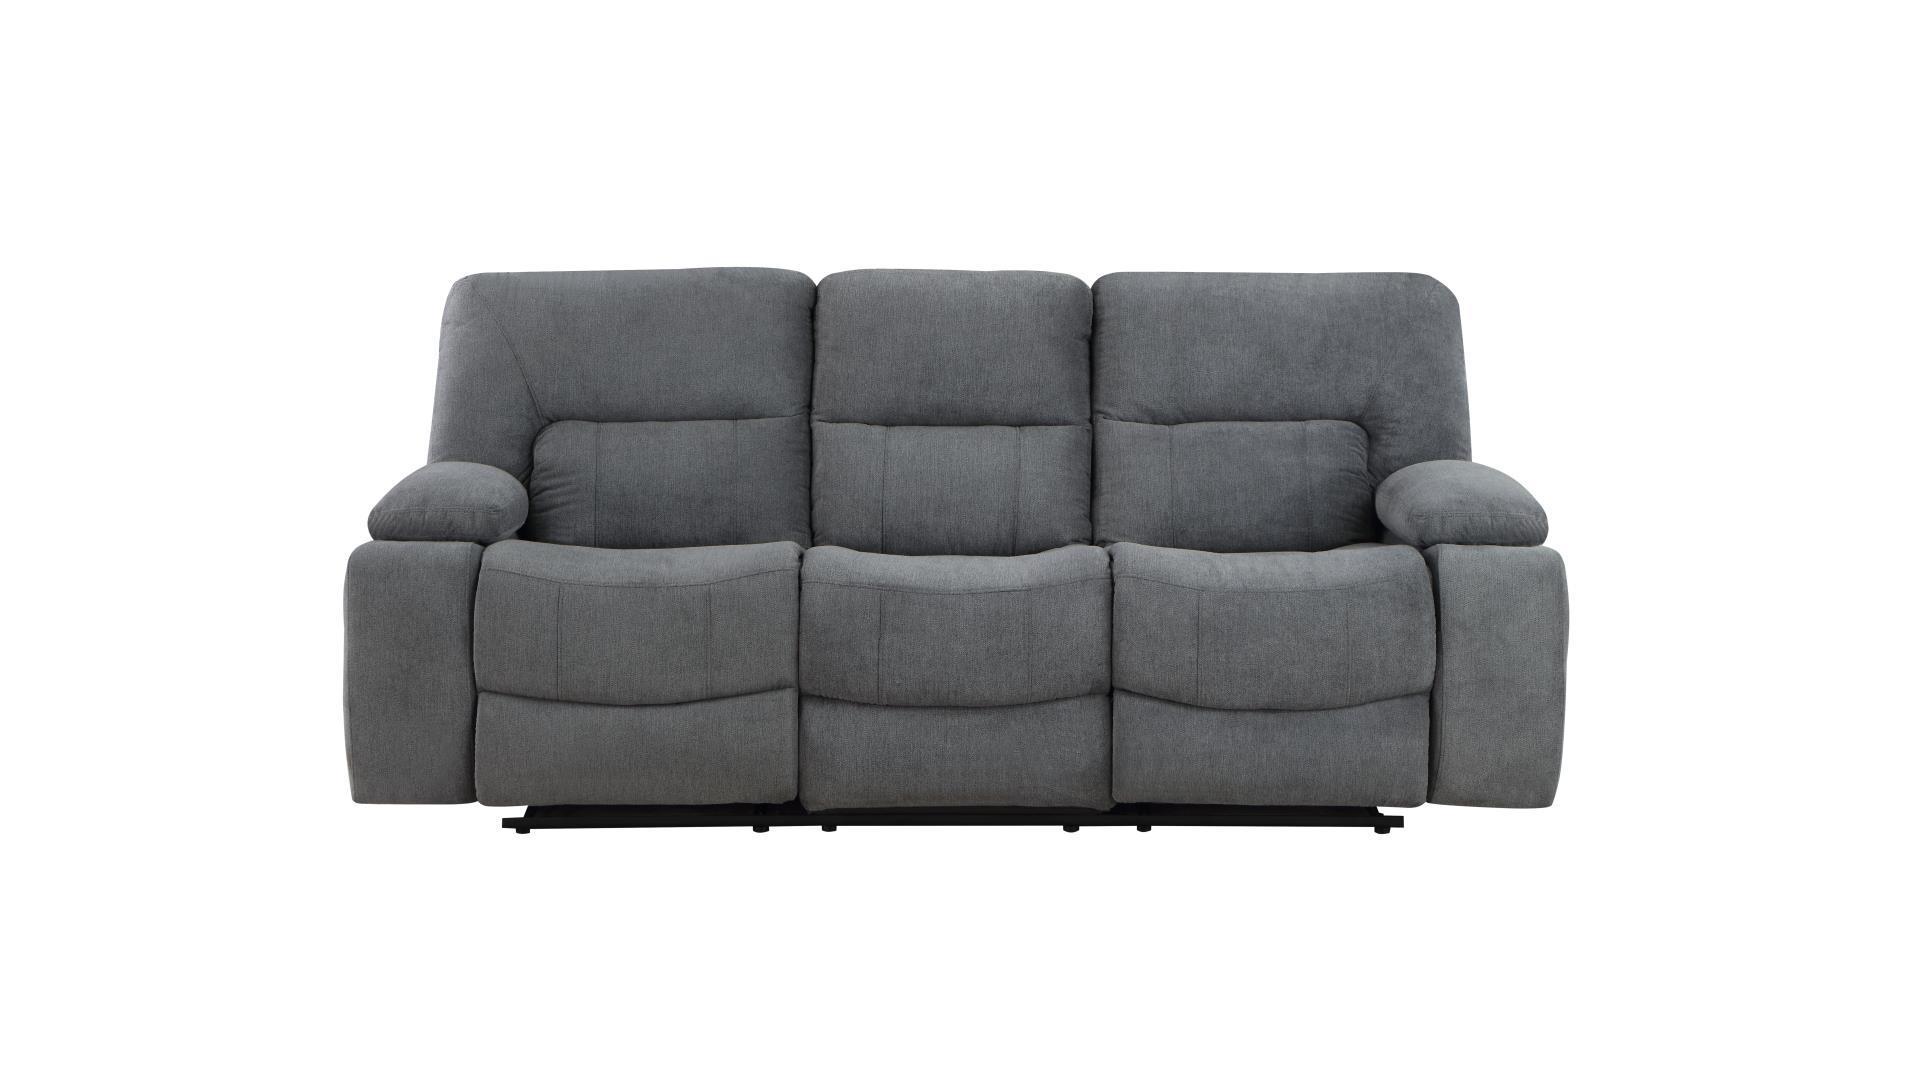 Contemporary, Modern Recliner Sofa OHIO-GR OHIO-GR-S in Gray Chenille